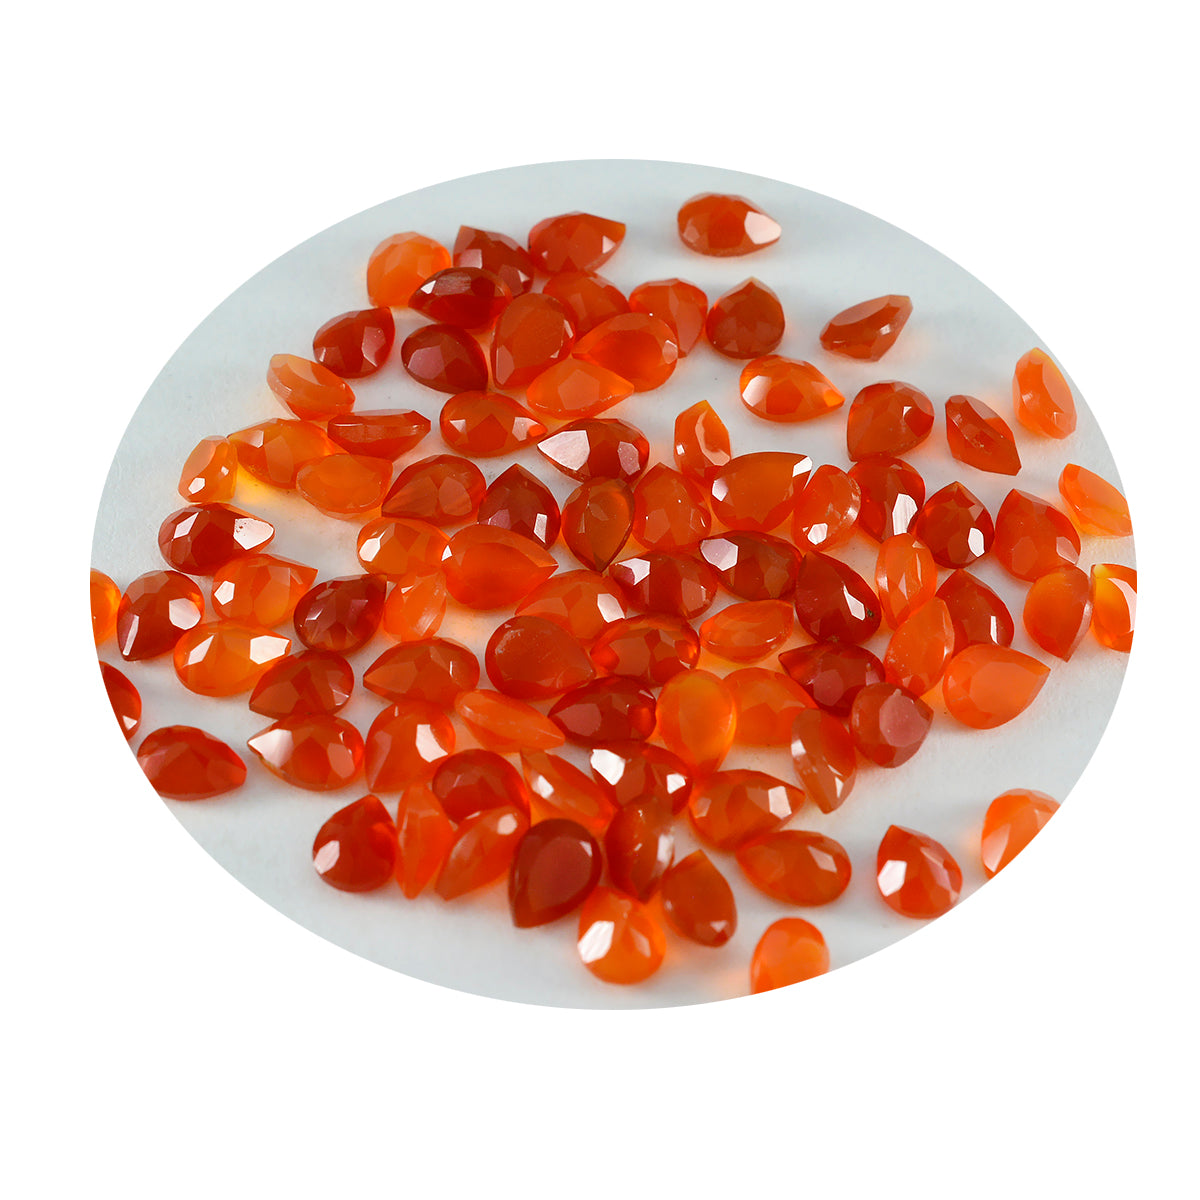 Riyogems 1 pièce d'onyx rouge naturel à facettes 4x6mm en forme de poire, pierres précieuses en vrac de merveilleuse qualité